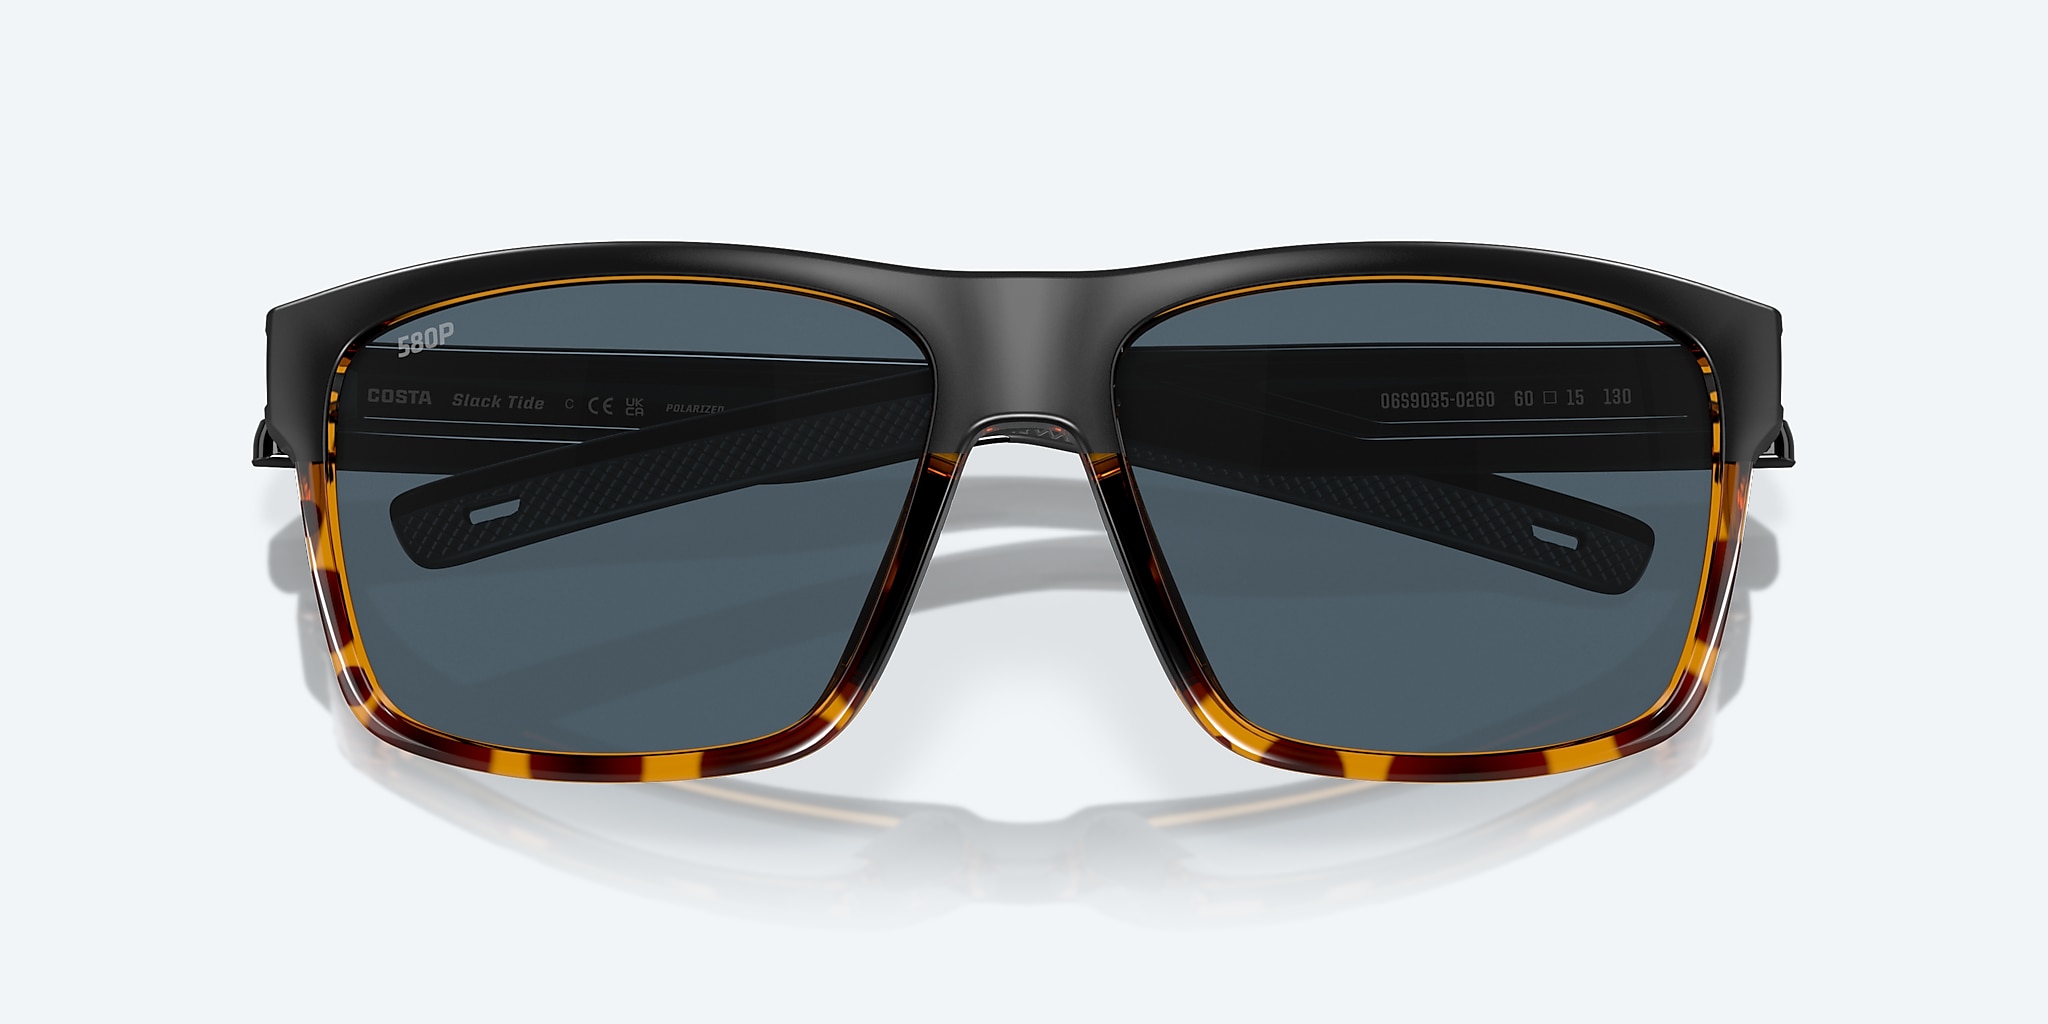 Costa Slack Tide 580P Polarized Sunglasses - Men